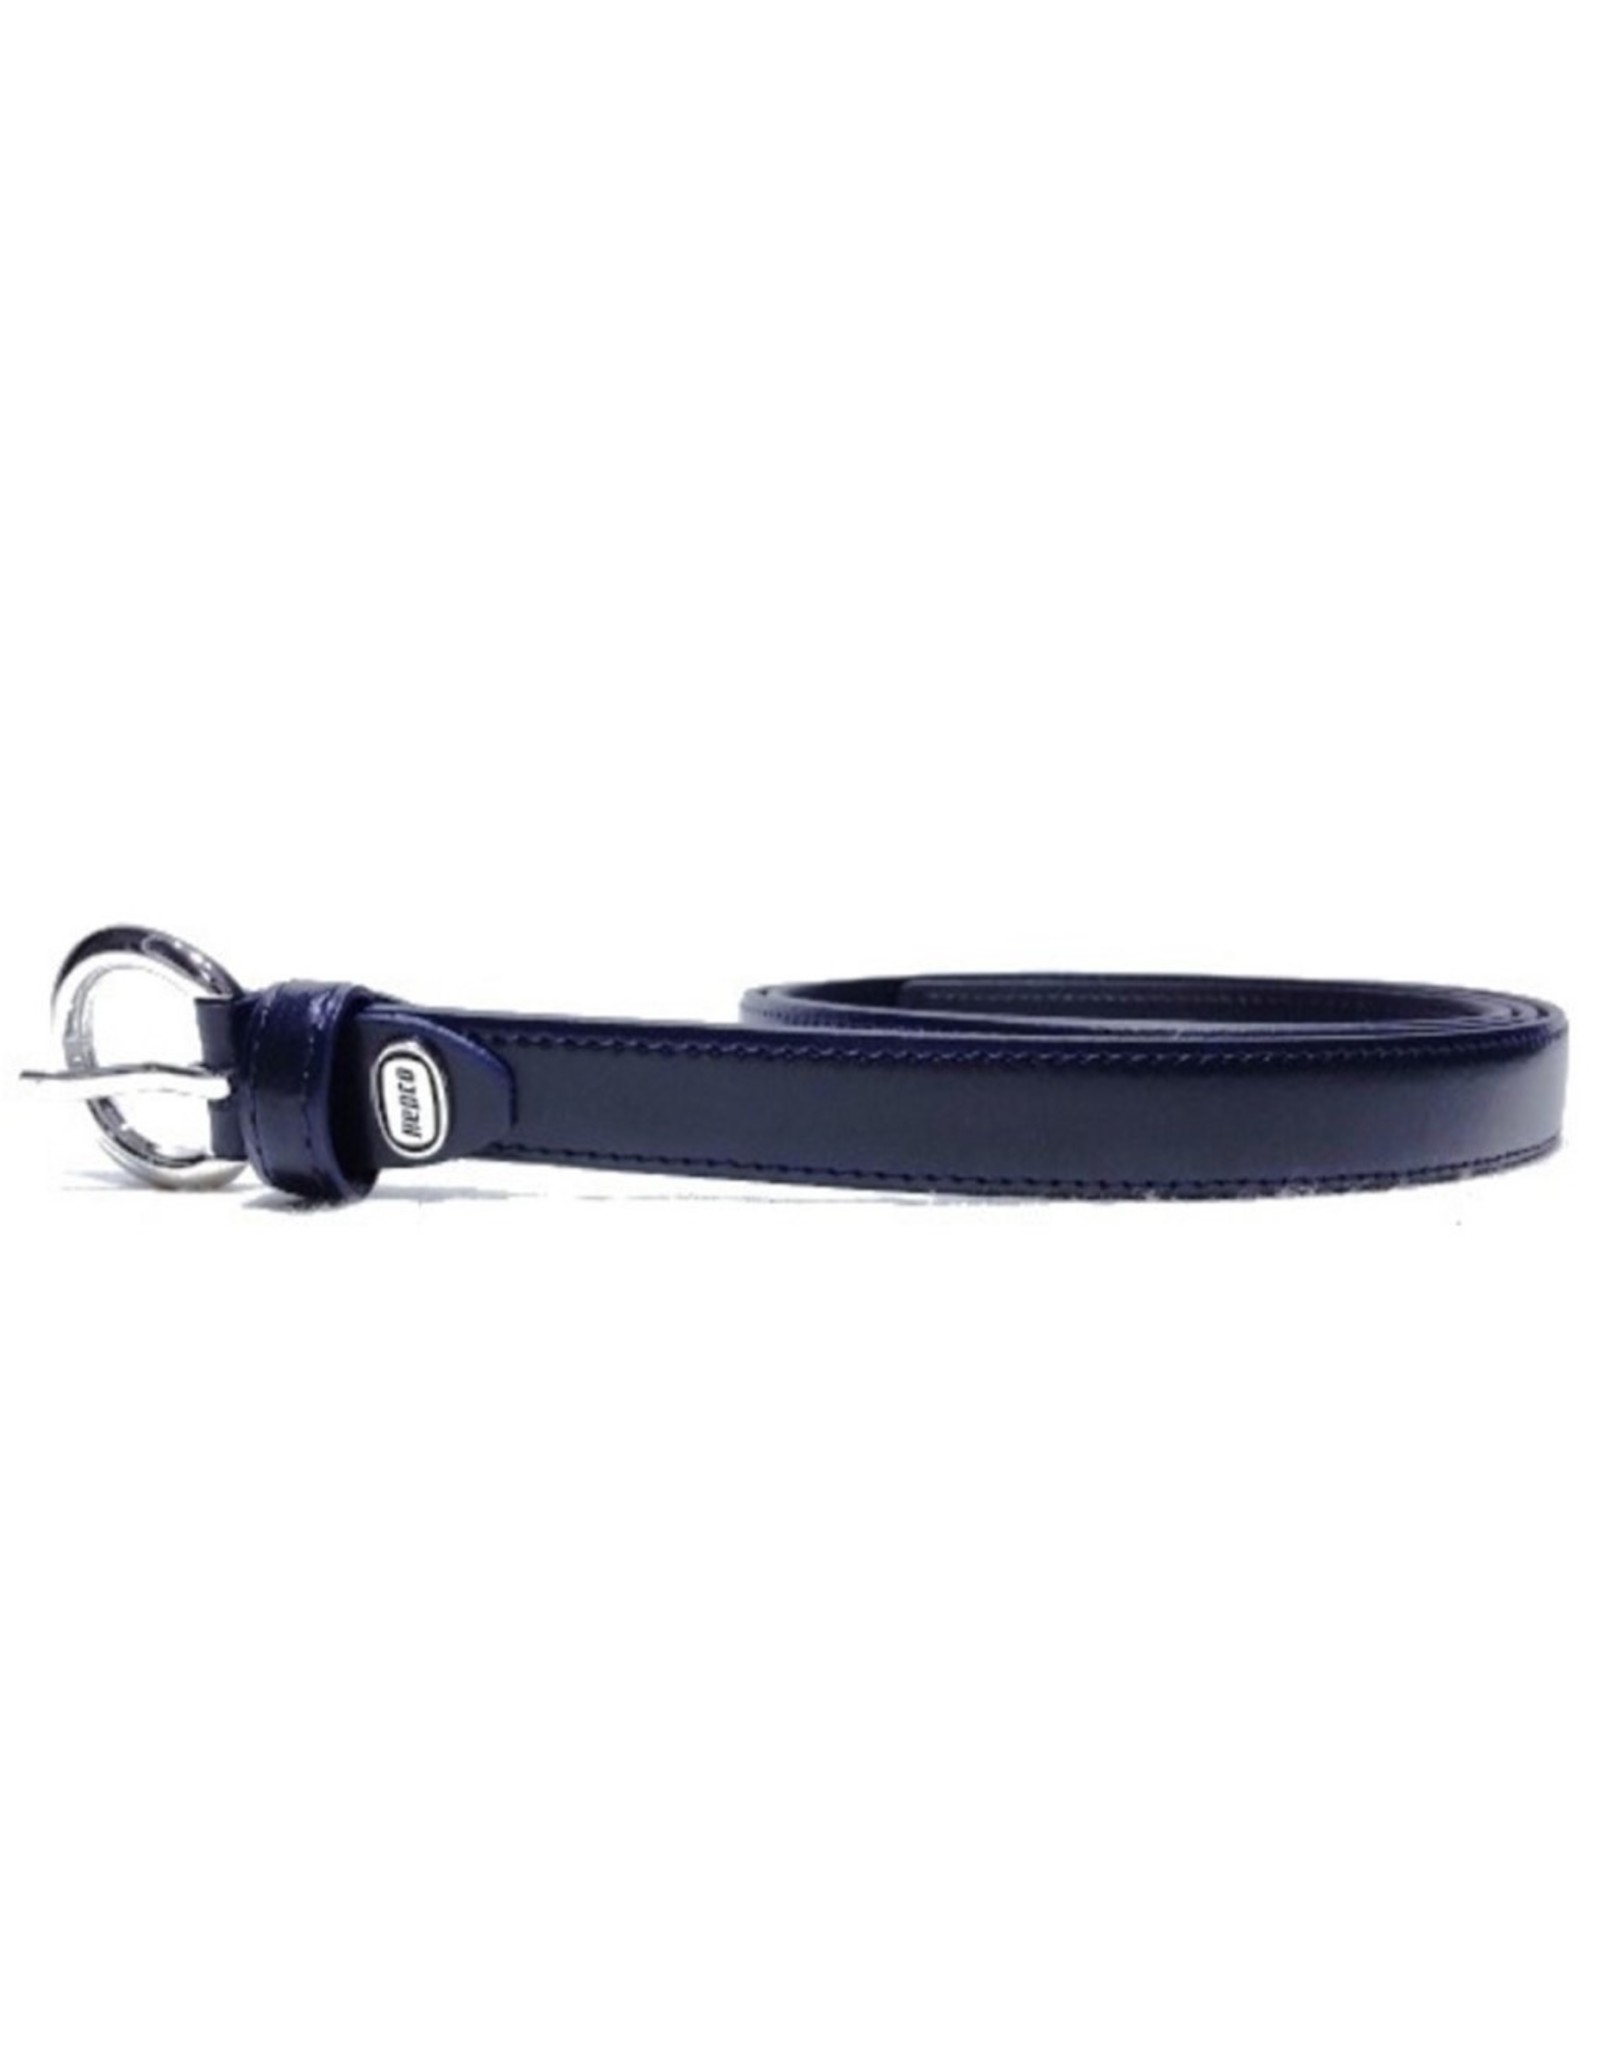 Hepco Leather belts - Leather belt darkblue hepco 6073bl